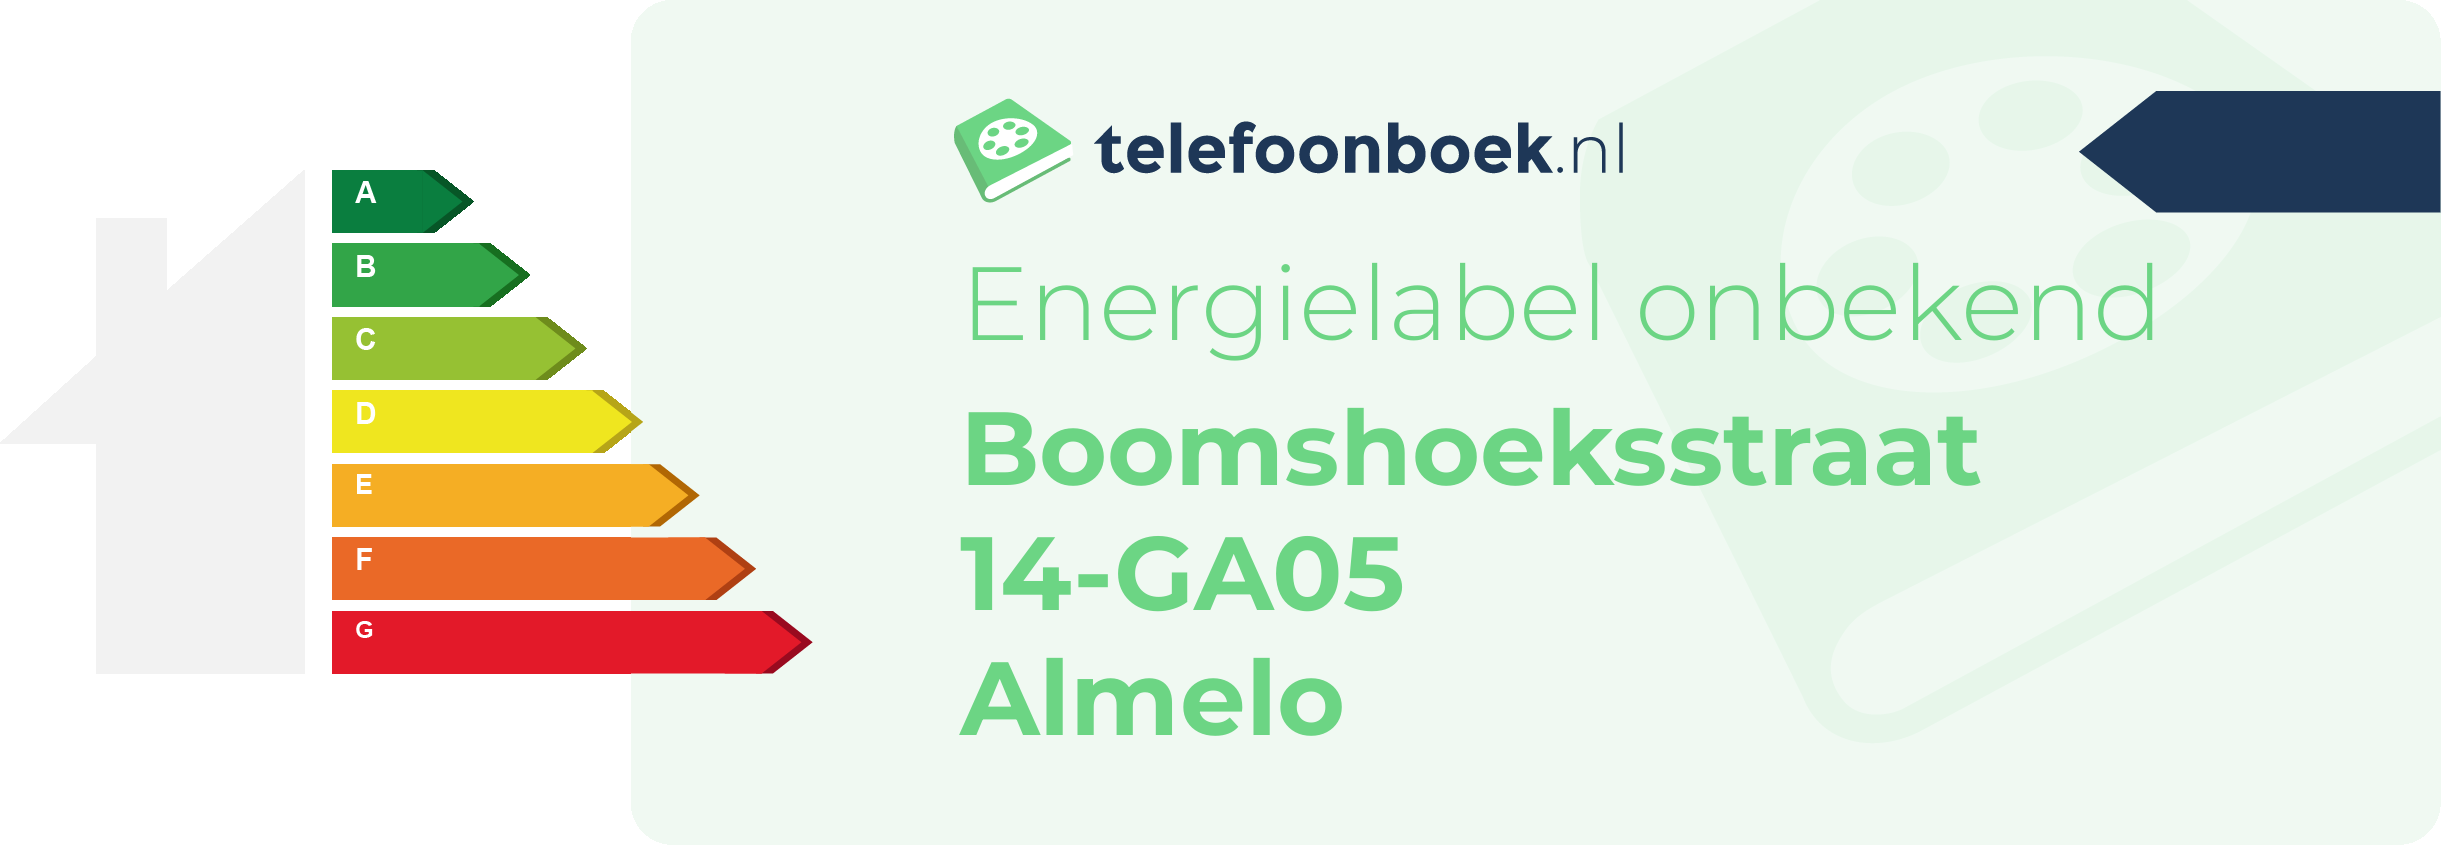 Energielabel Boomshoeksstraat 14-GA05 Almelo